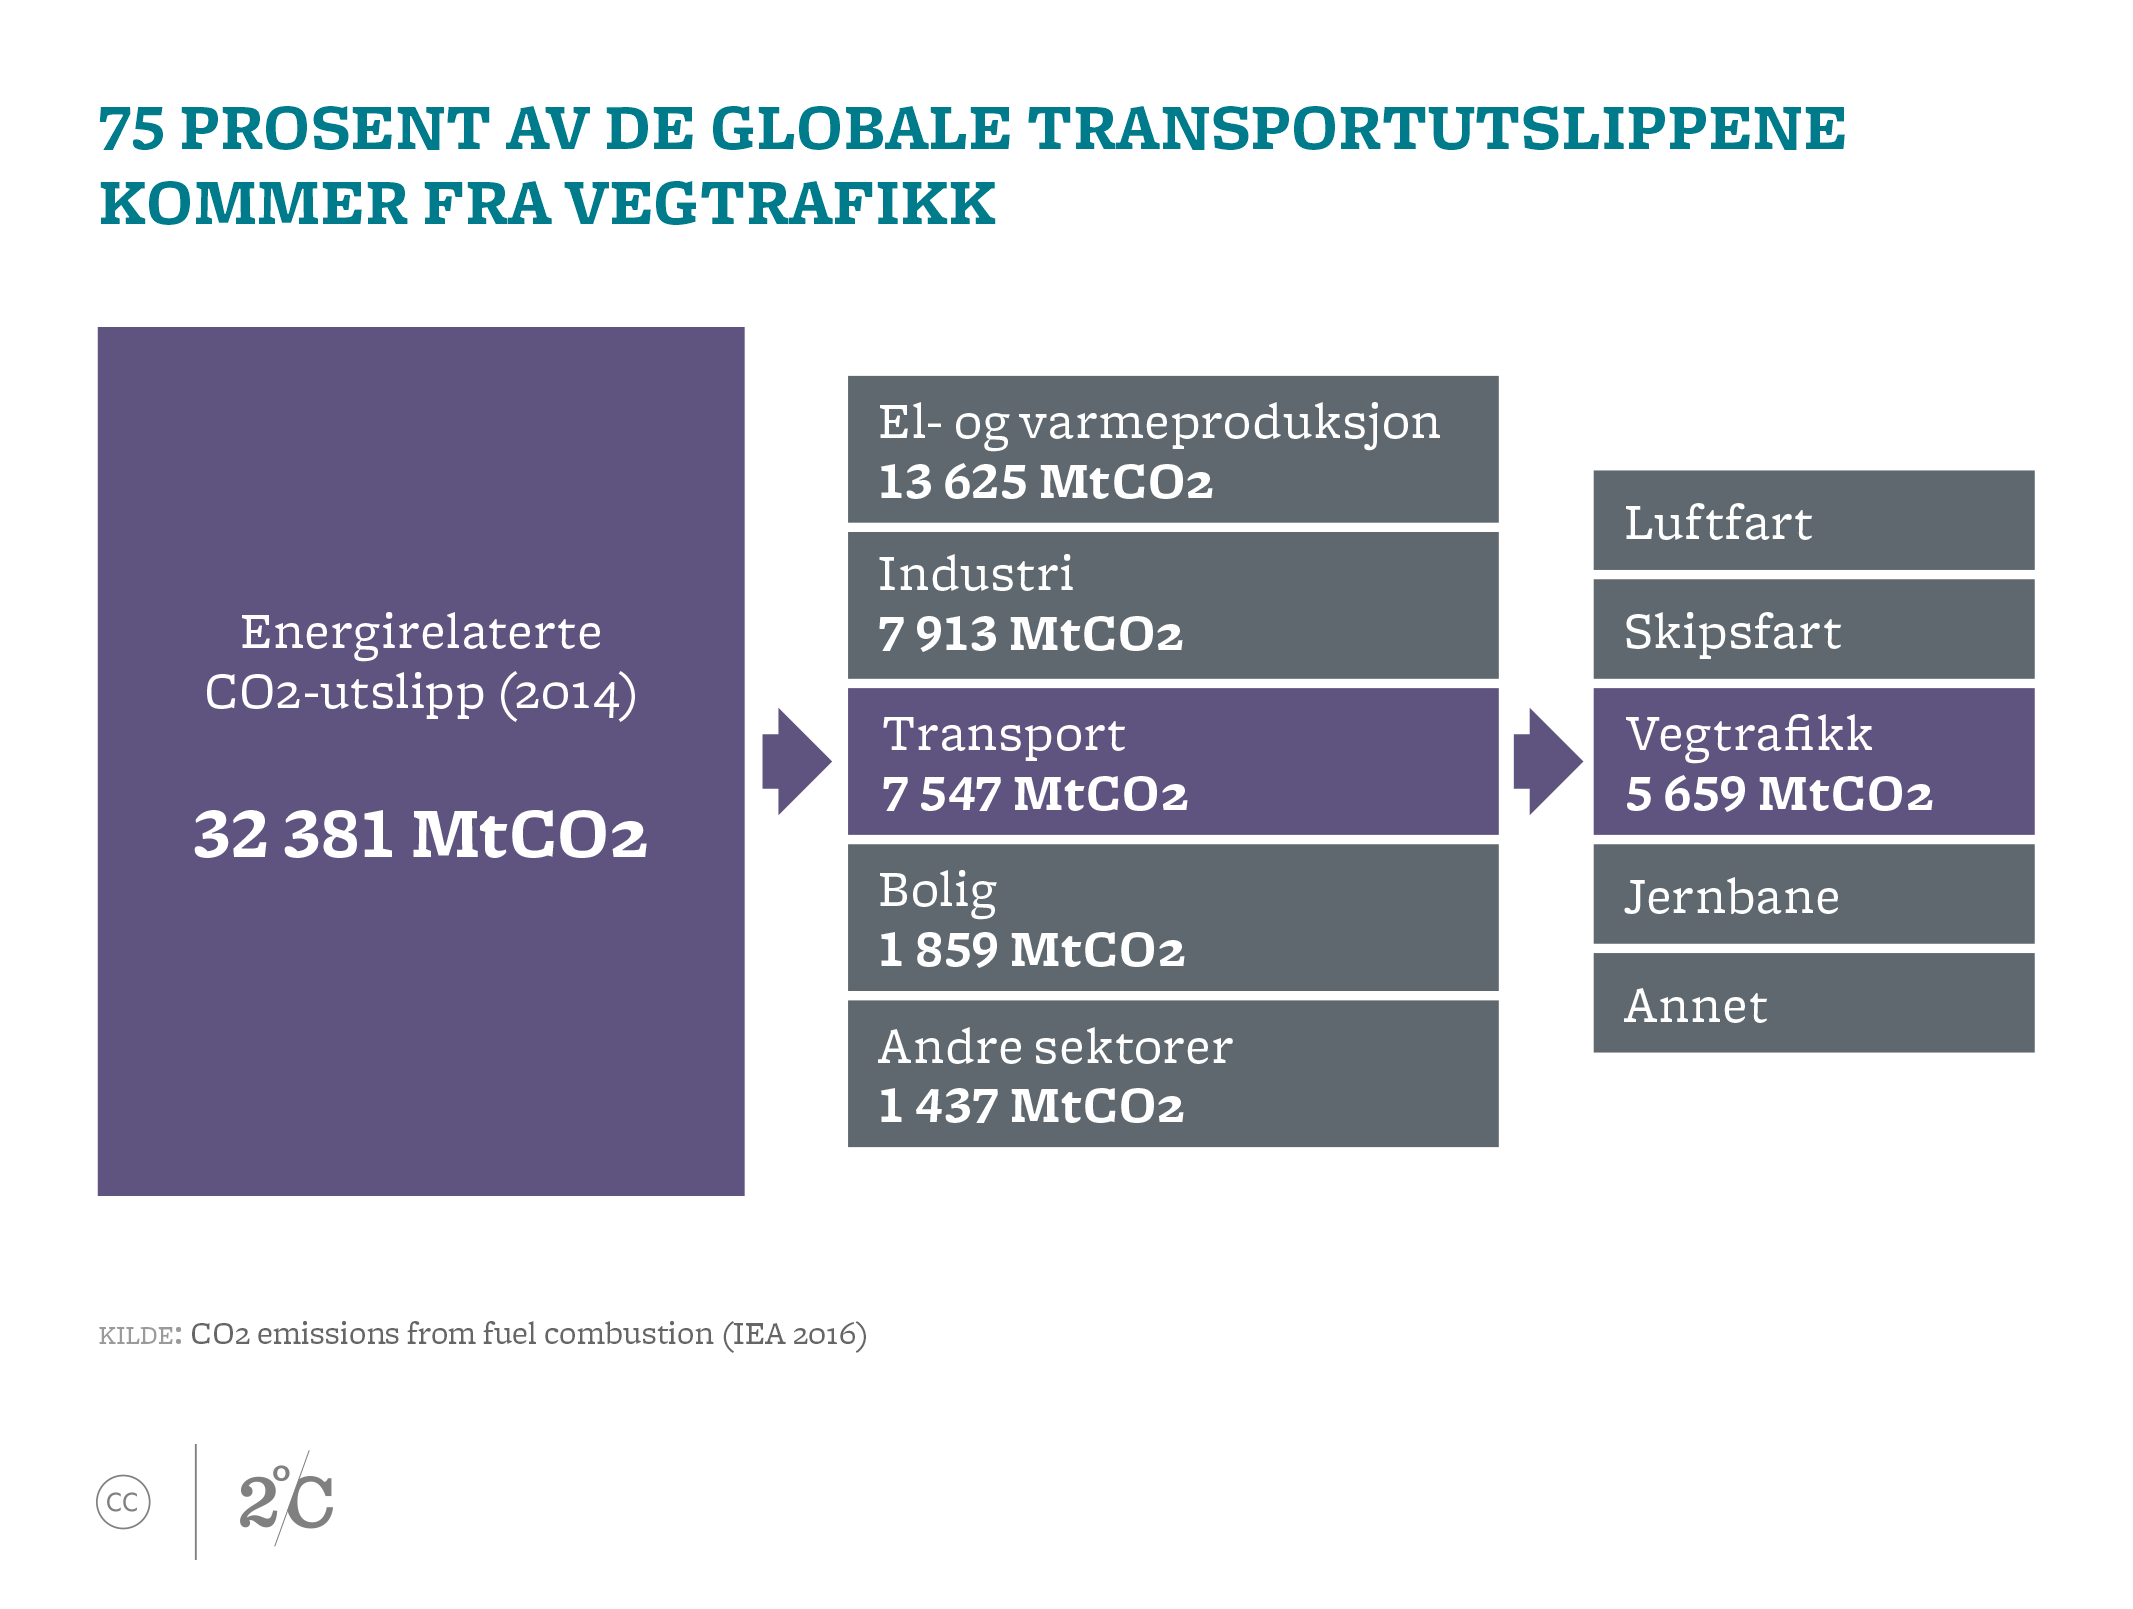 75 prosent av de globale transportutslippene kommer fra vegtrafikk. Illustrasjon: Norsk Klimastiftelse